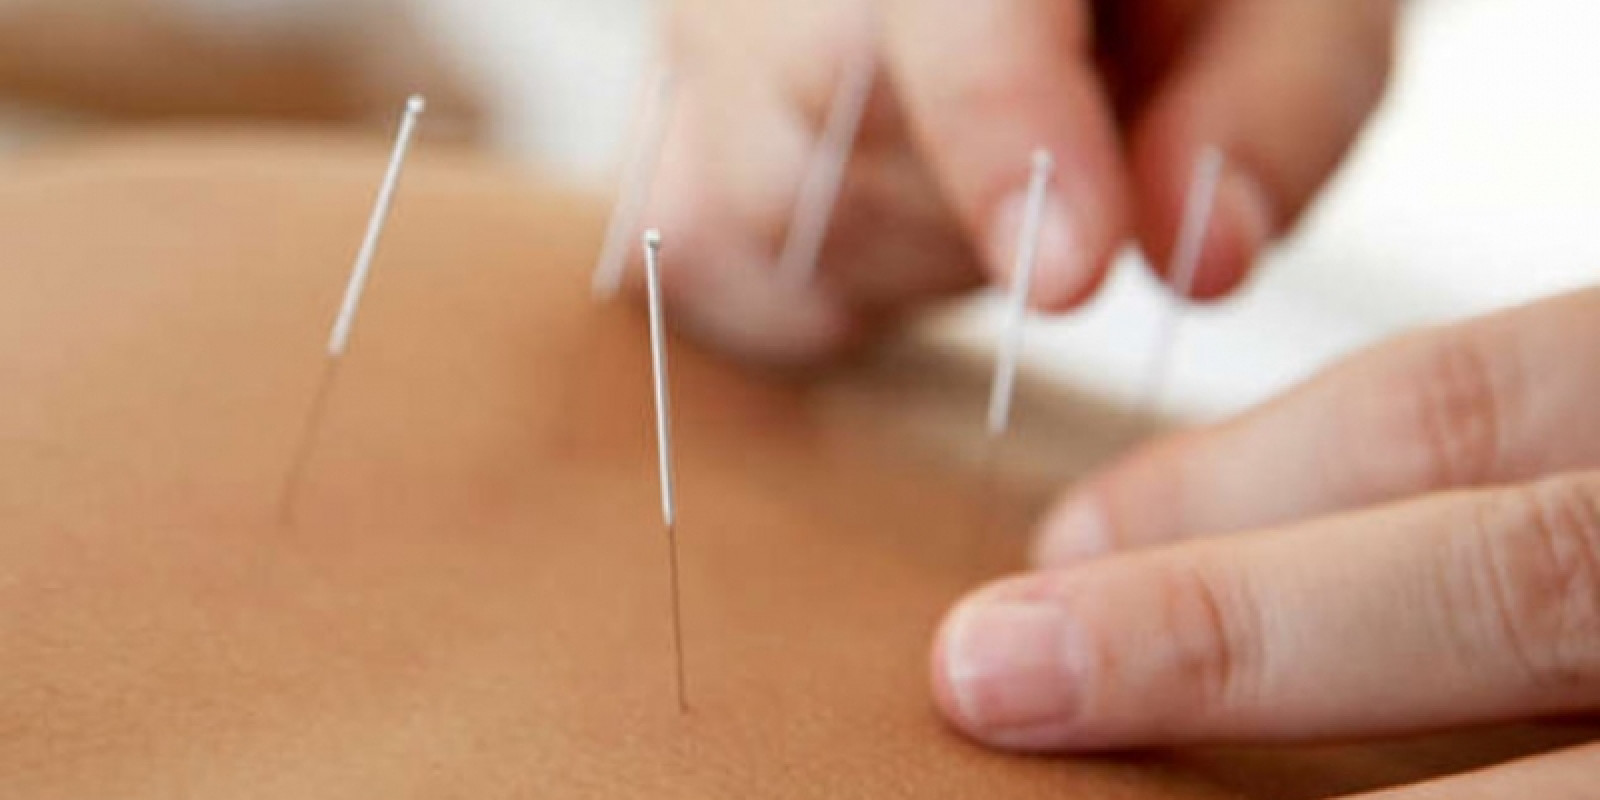 Planos e Promoções de tratamento com acupuntura e acupuntura estética facial e corporal